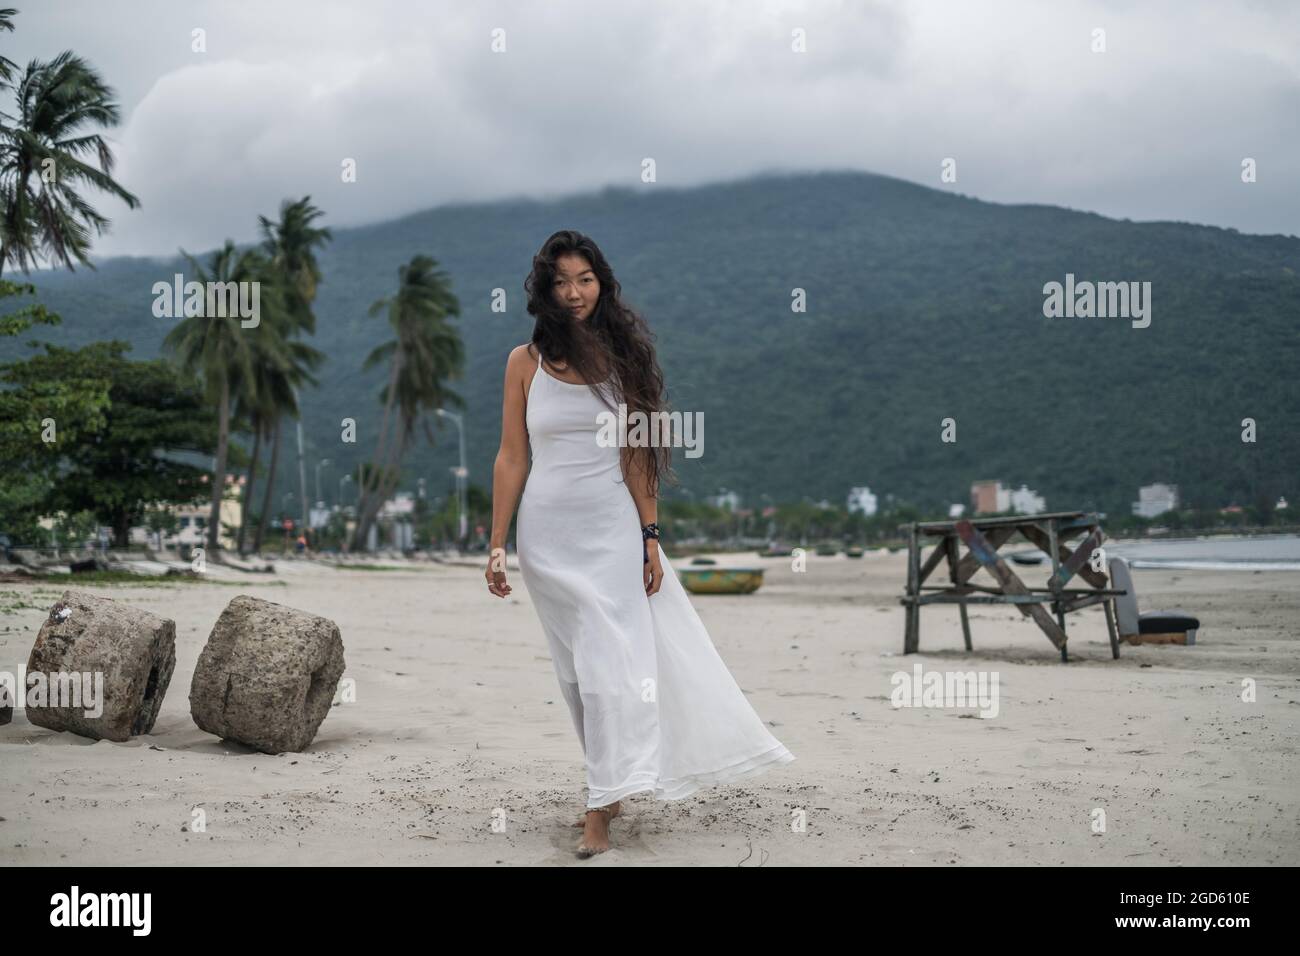 Belle jeune femme asiatique en robe blanche marchant sur la plage. Fond de montagne. Cheveux longs et bouclés noirs. Vent dans ses cheveux. Photo romantique. Banque D'Images